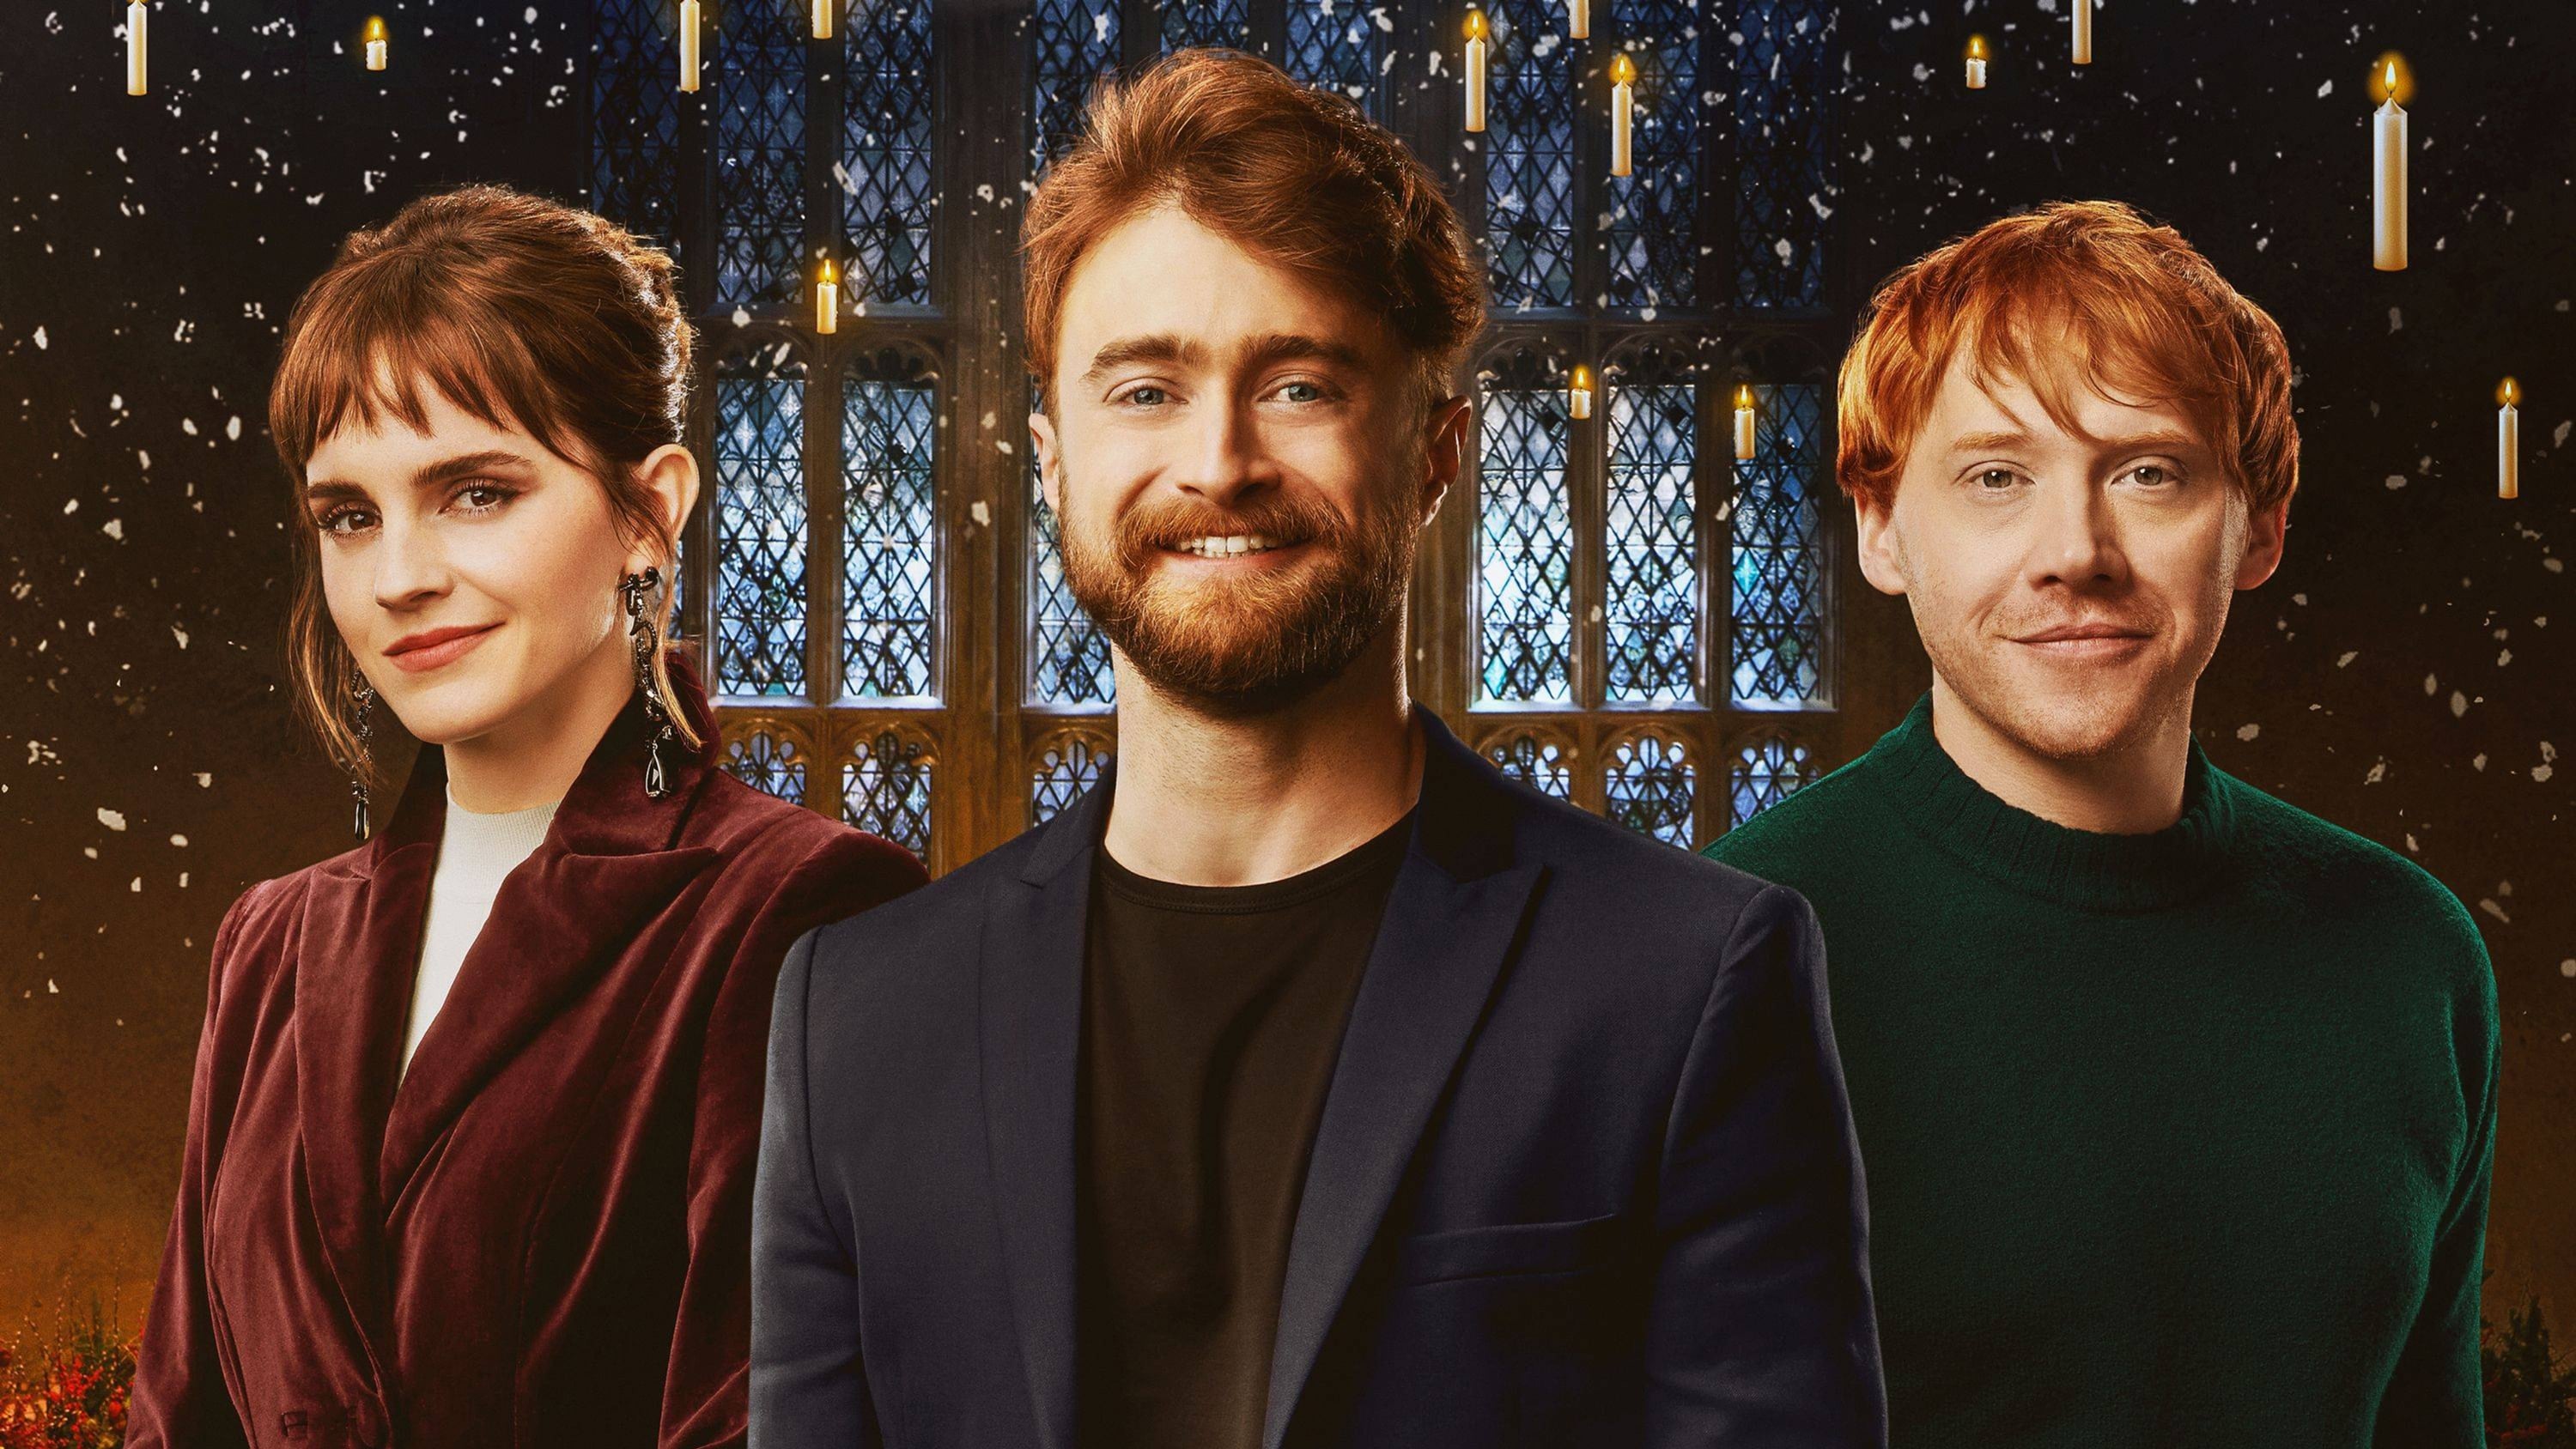 Harry Potter 20 let filmové magie: Návrat do Bradavic (2022)